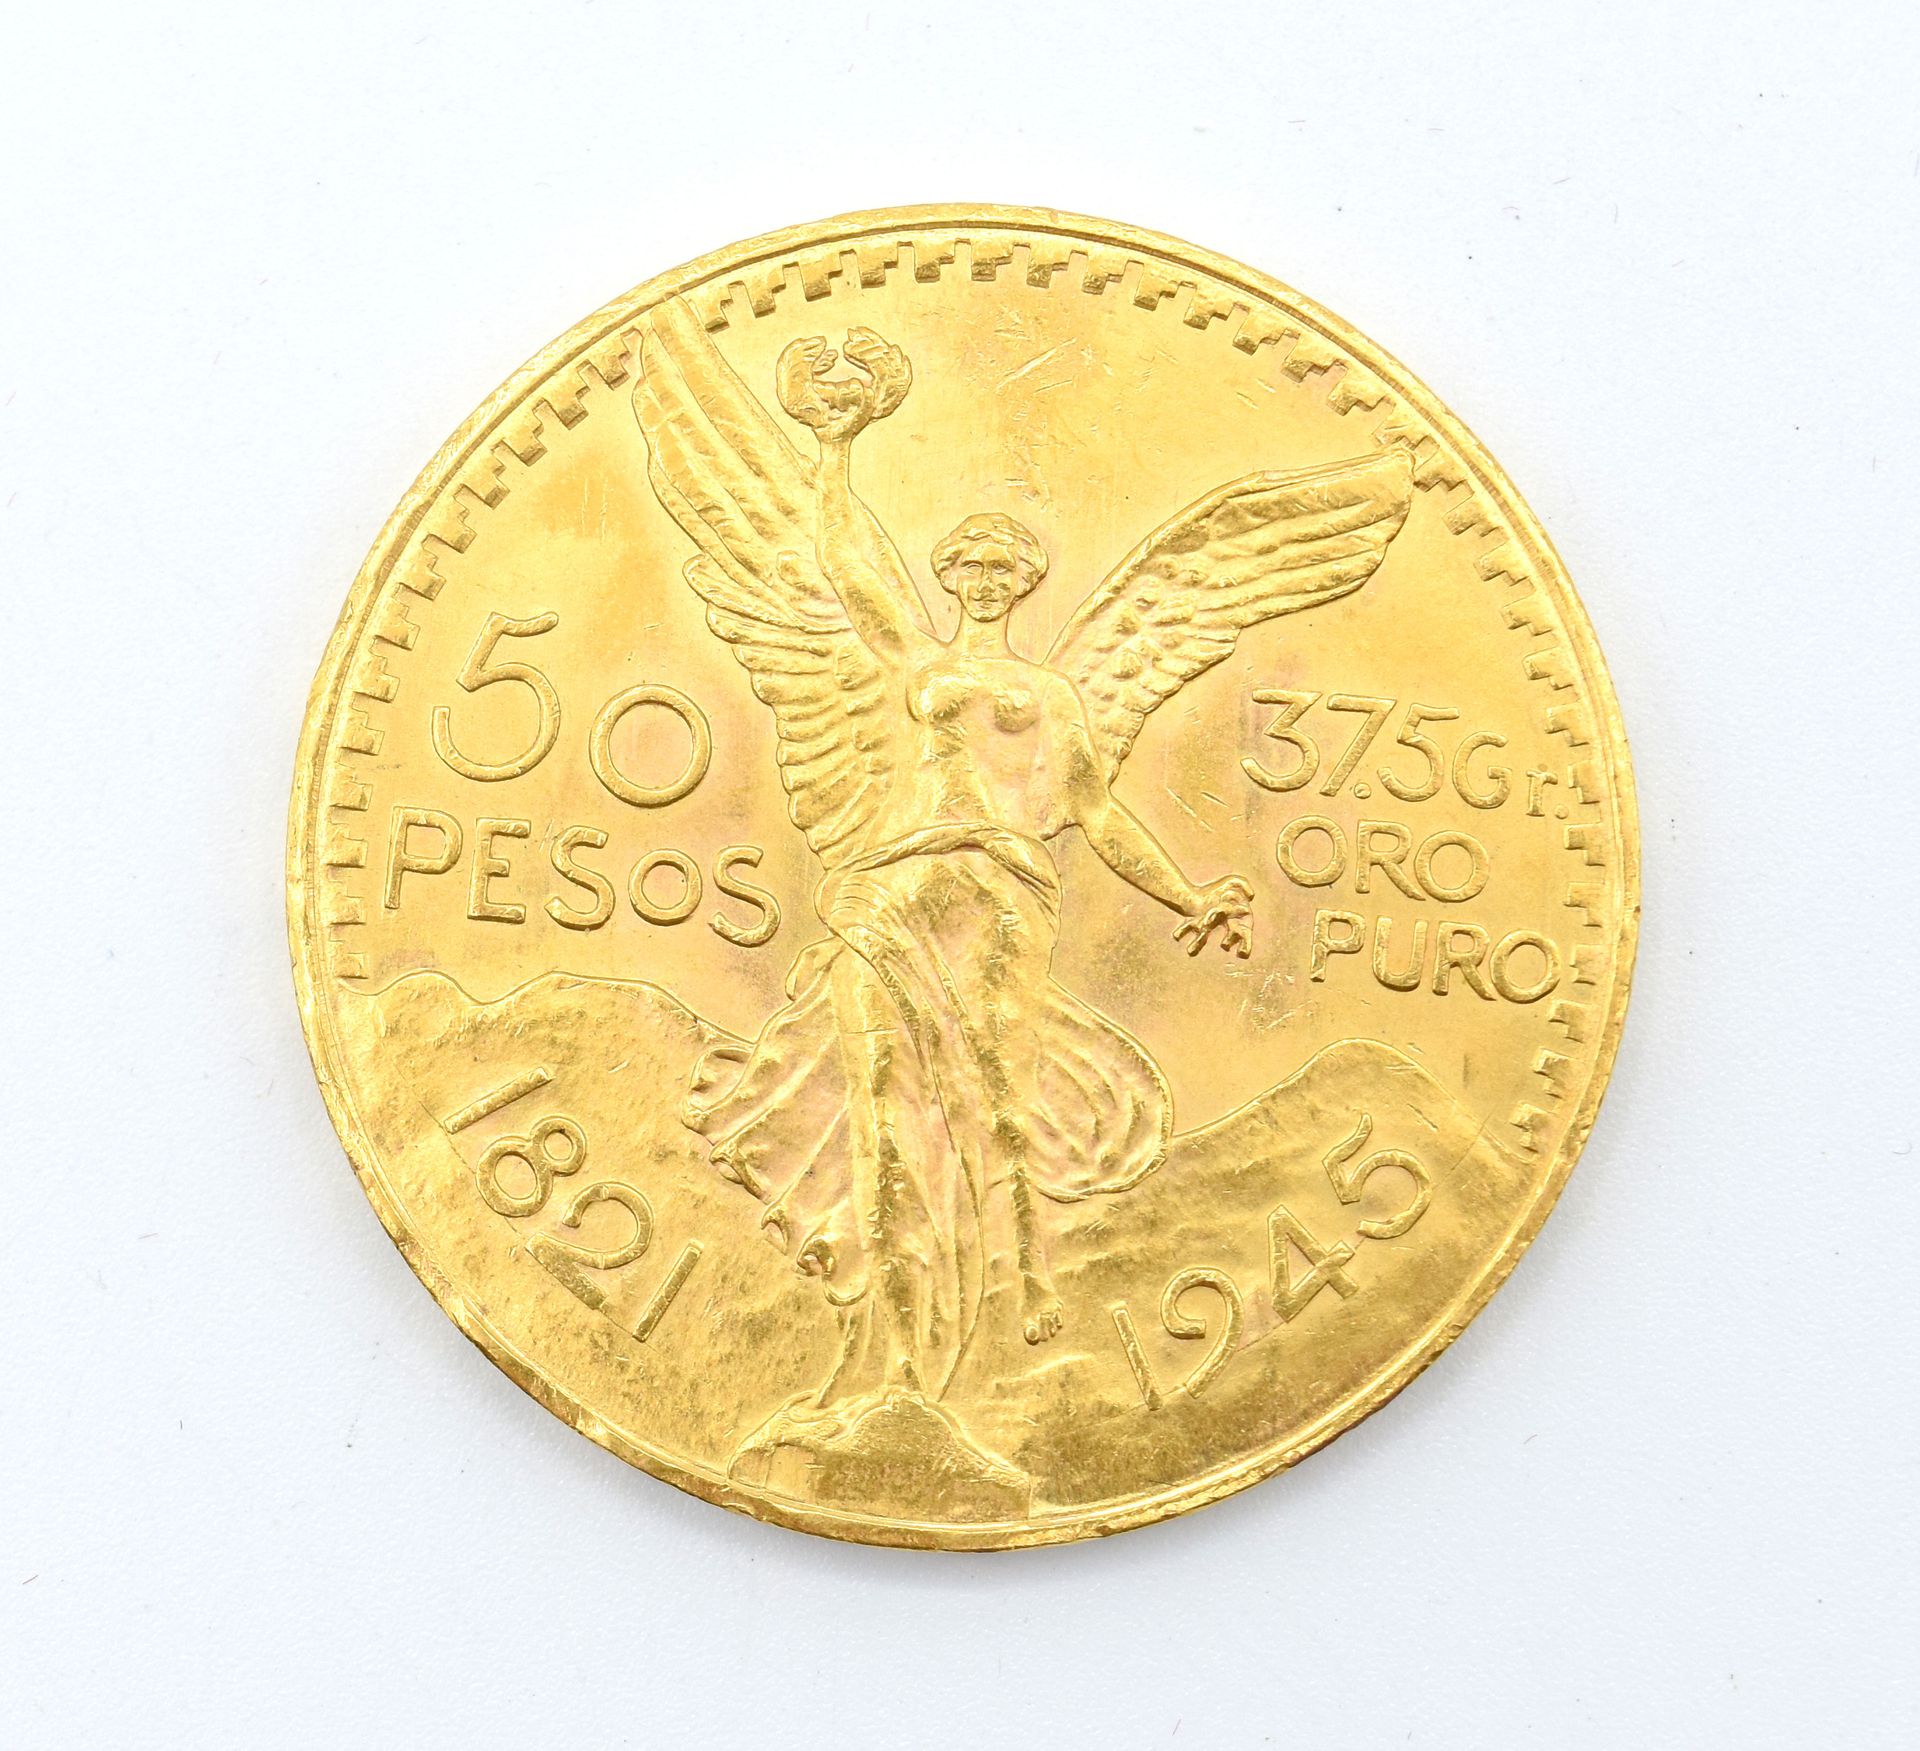 Null Moneta d'oro giallo 900/1000 (50 pesos messicani - 1821-1945) (danneggiata)&hellip;